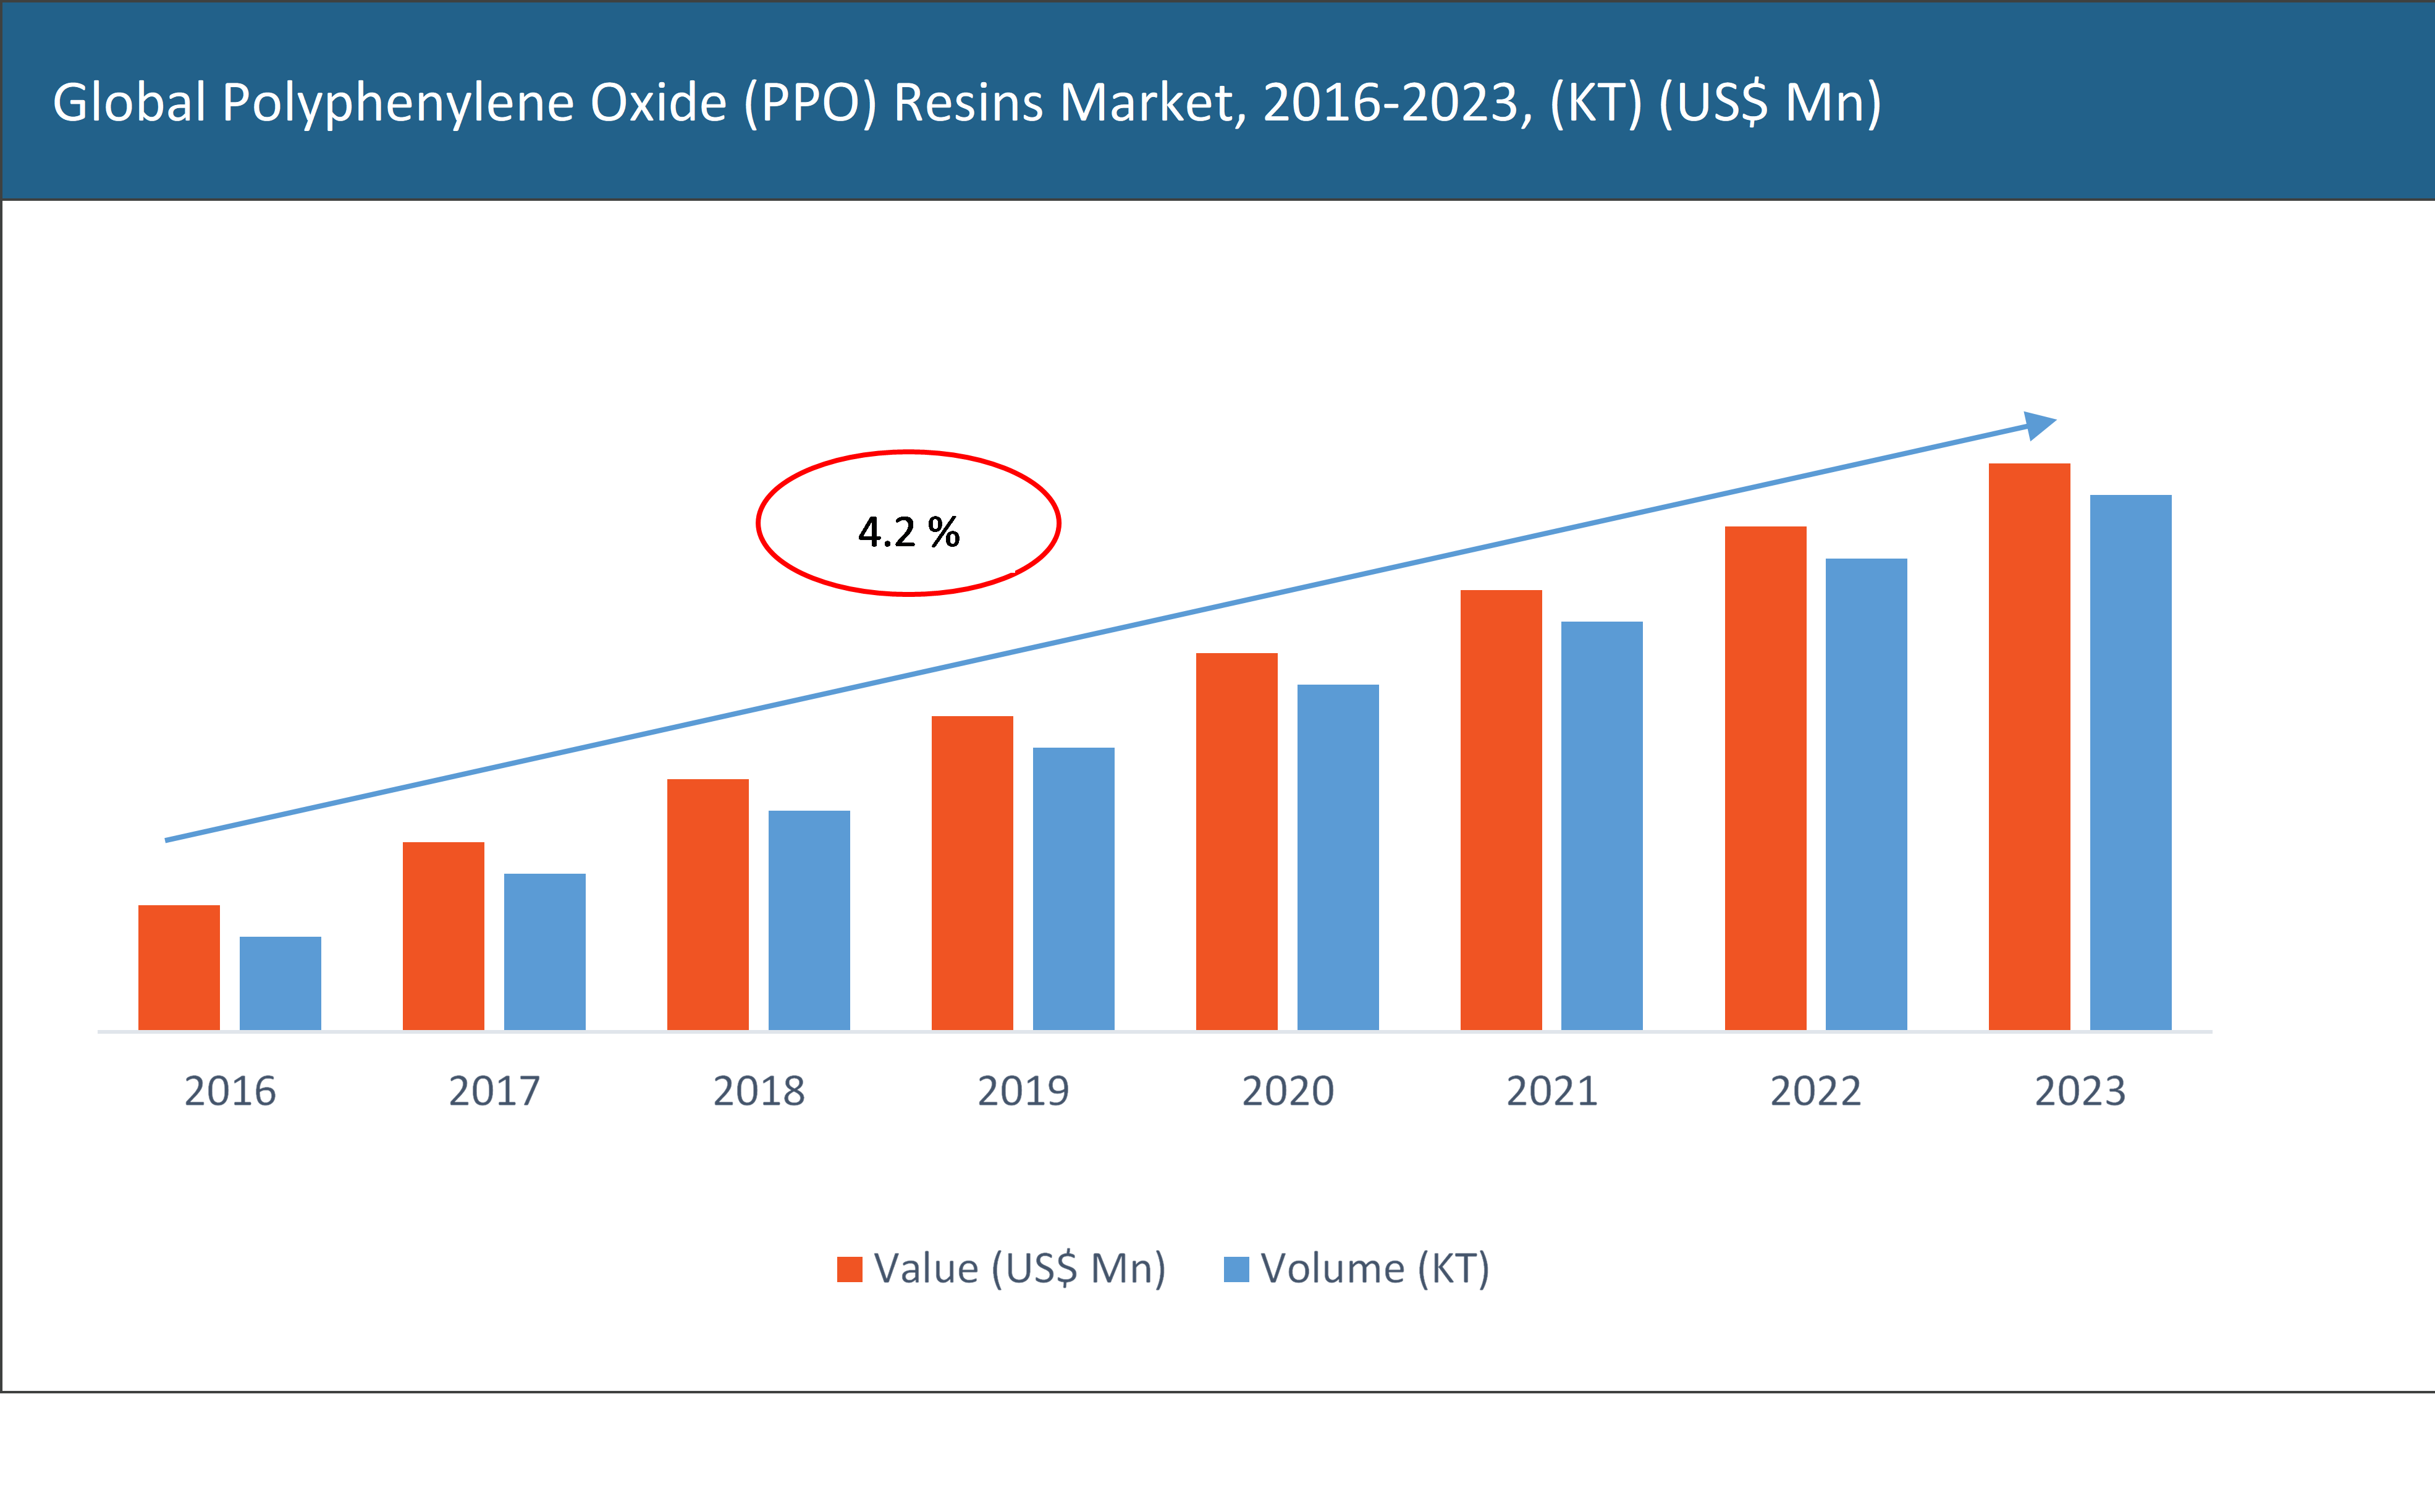 Polyphenylene oxide (PPO) resin market